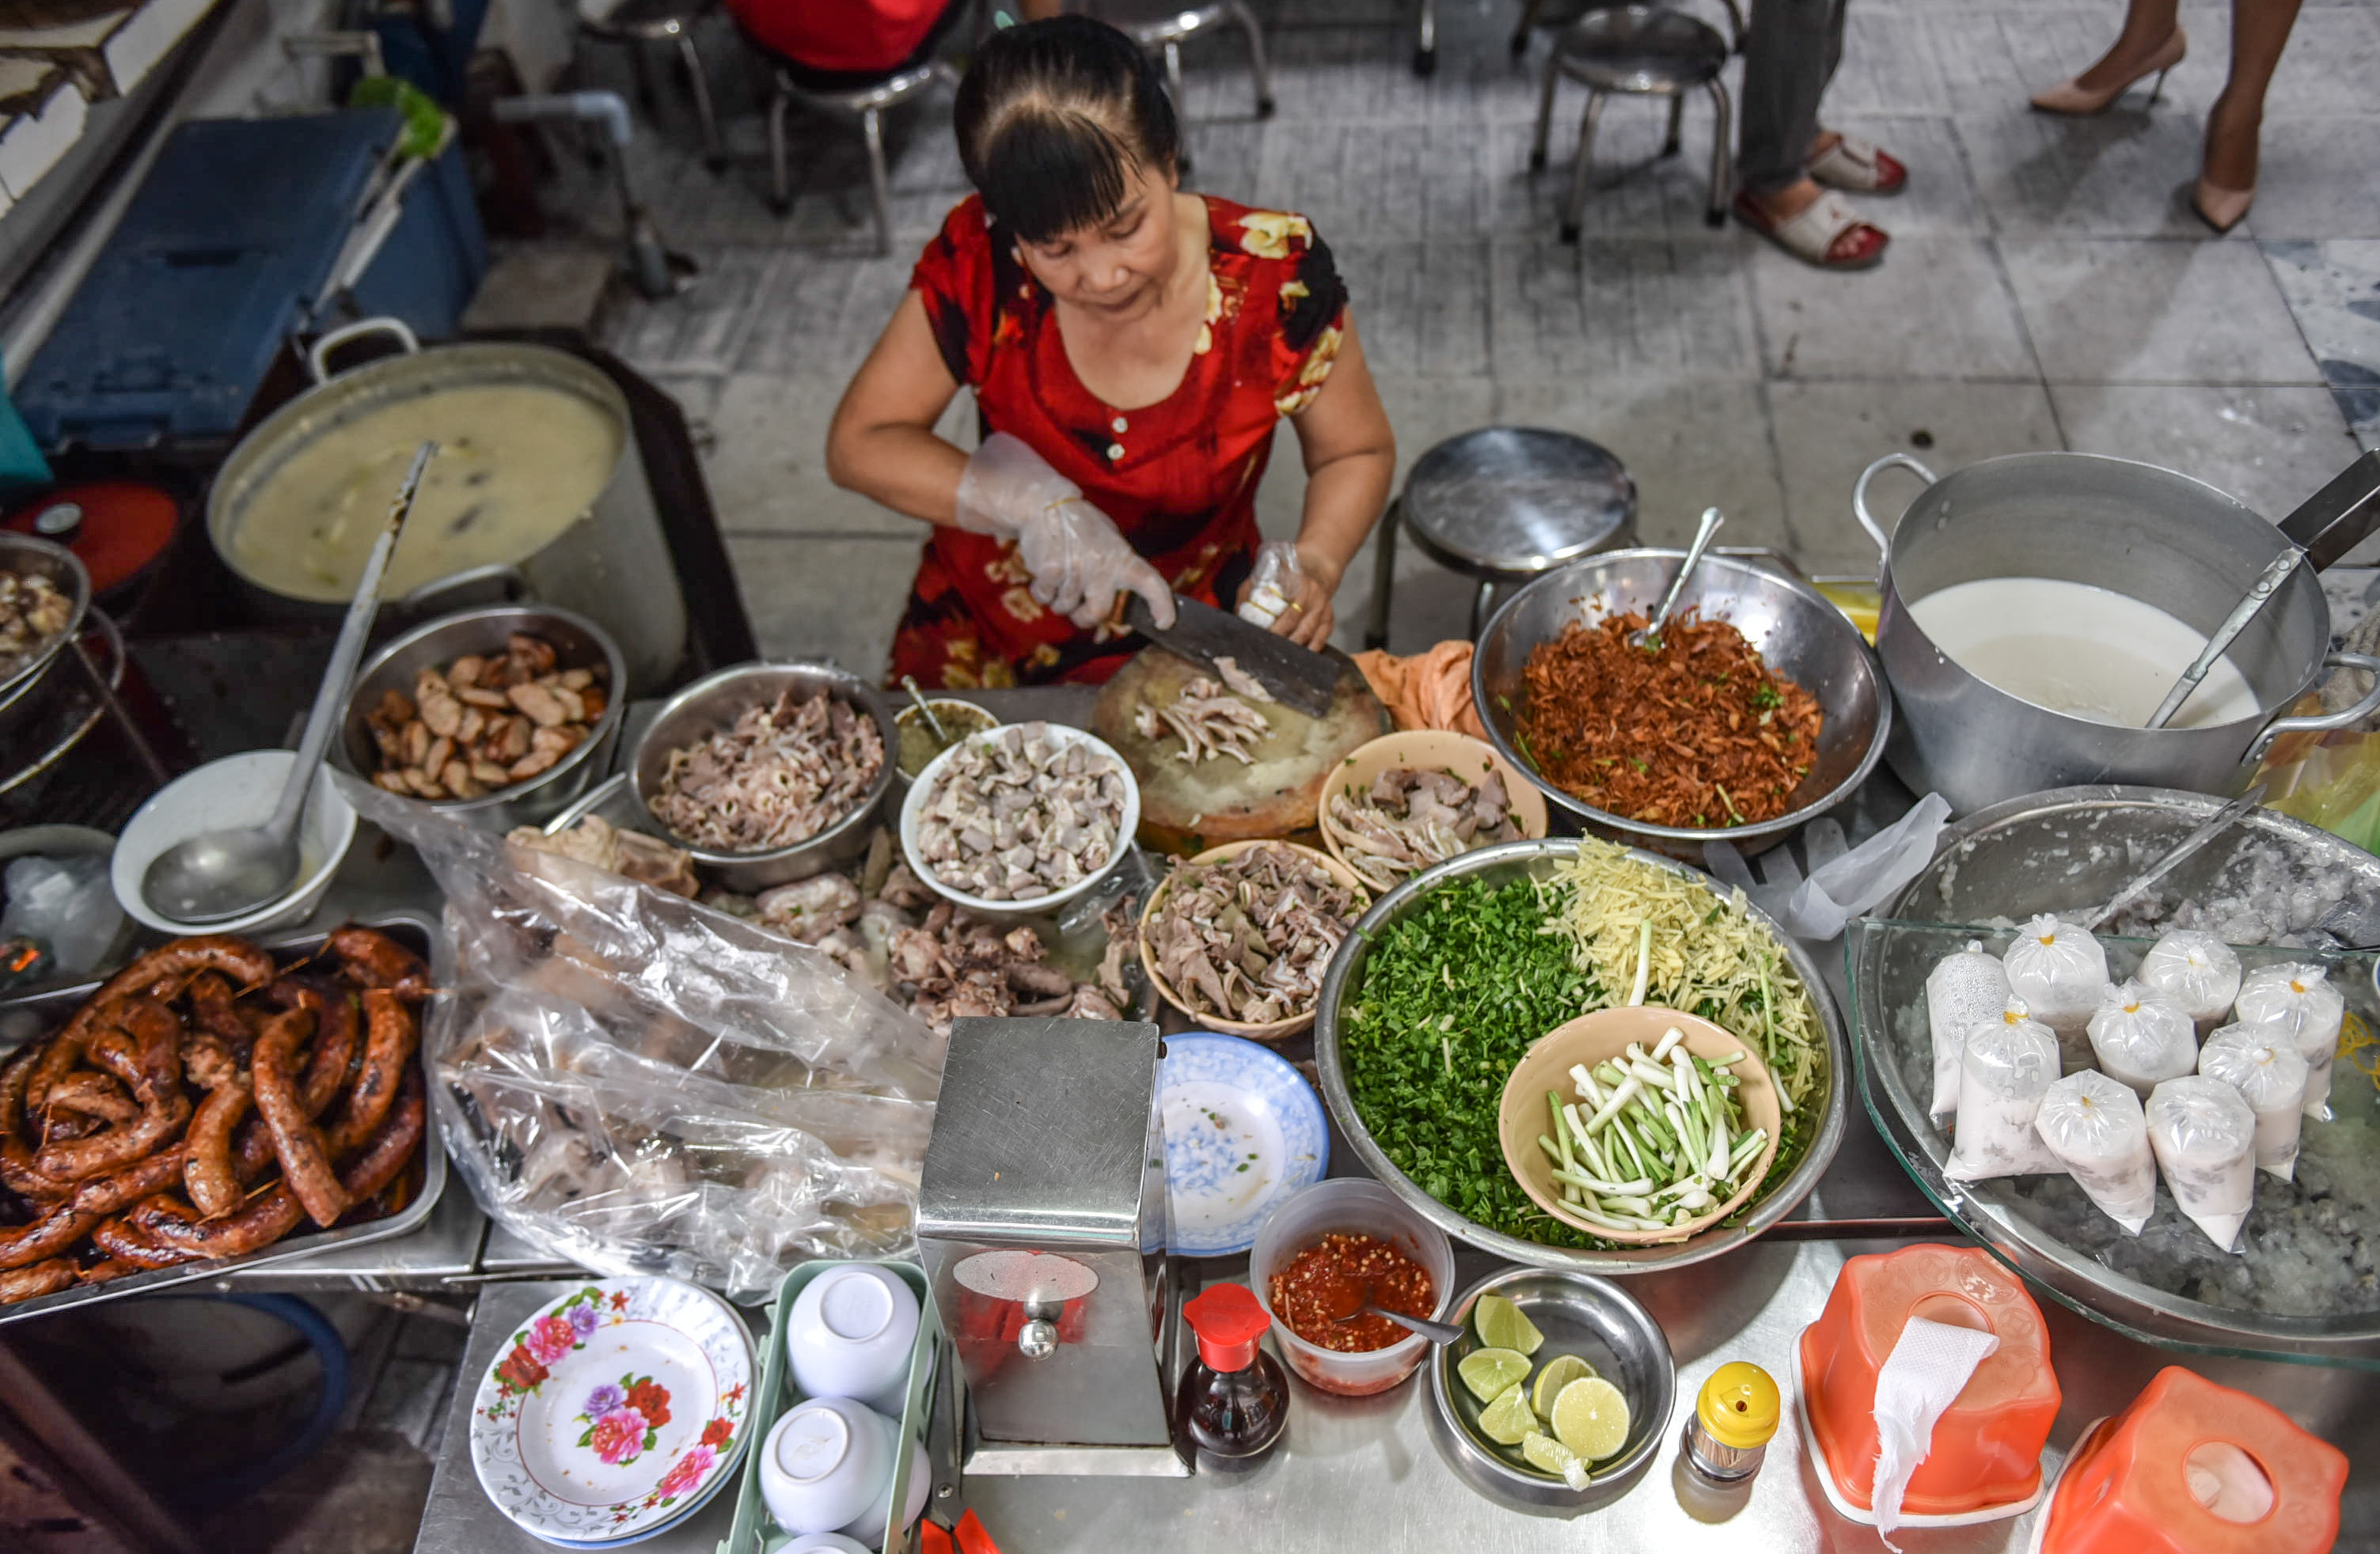 Hoang Thi Ngoc Huong prepares food at Co Hoang in District 11, Ho Chi Minh City. Photo: Ngoc Phuong / Tuoi Tre News